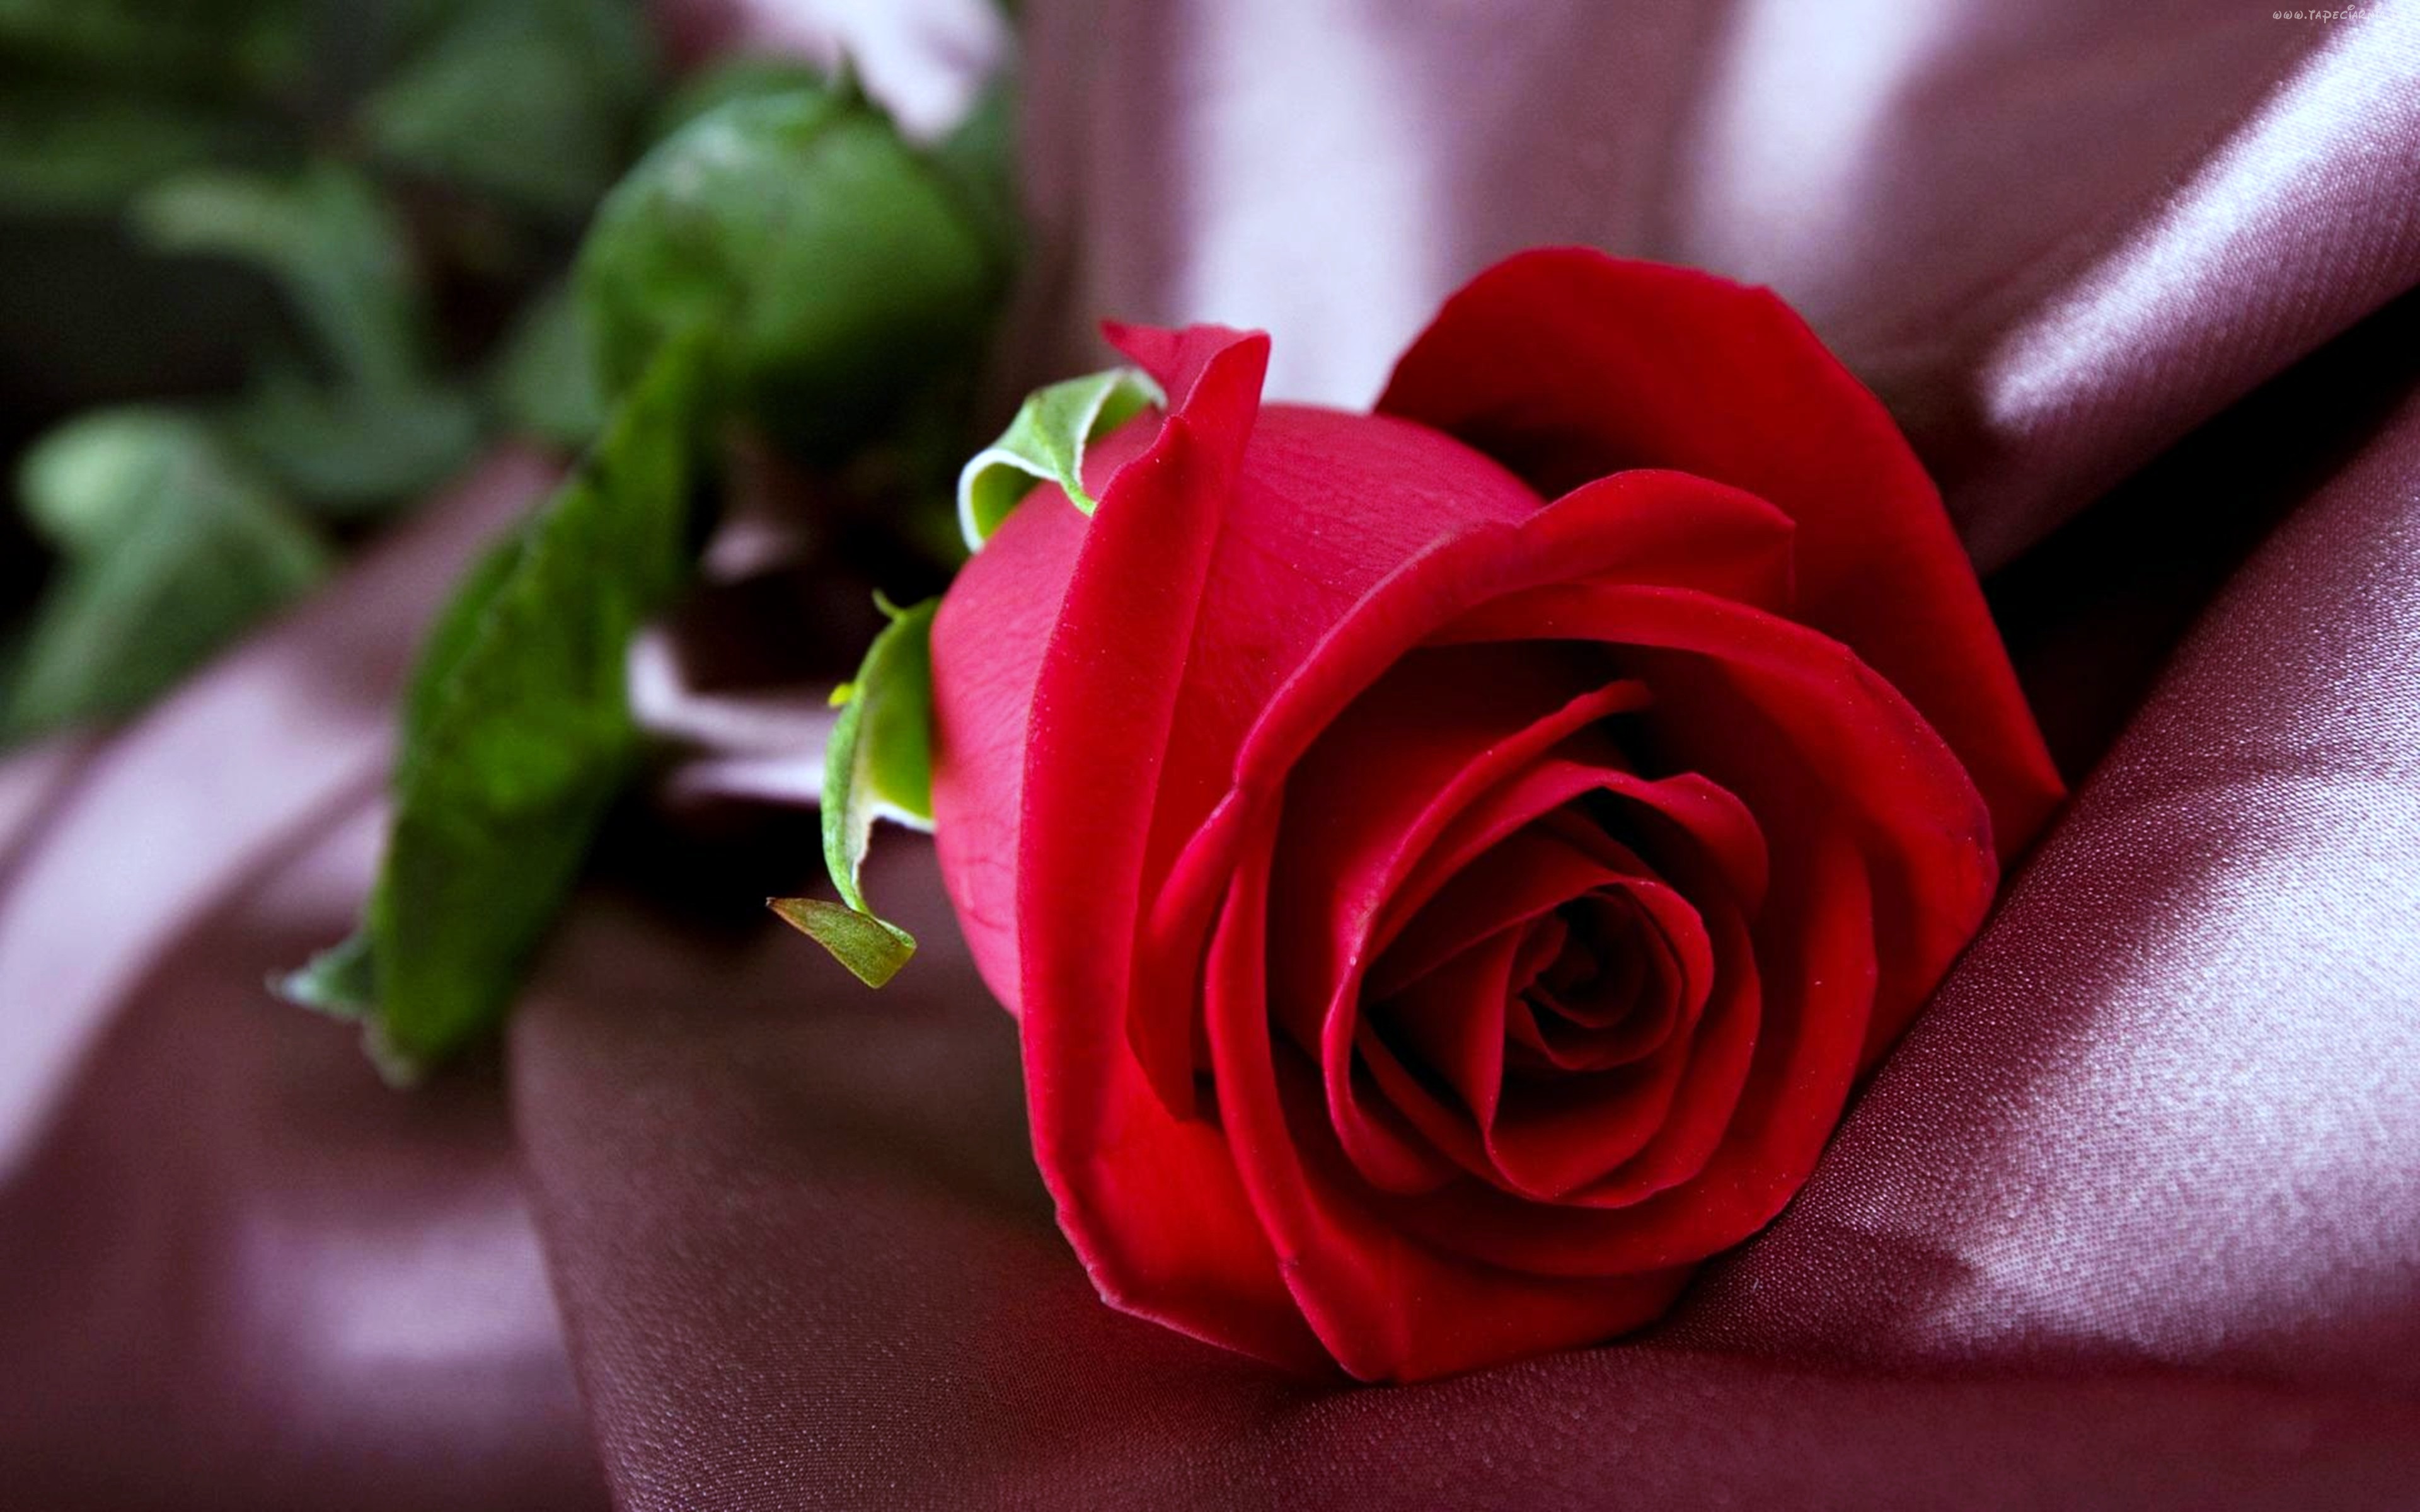 Gul yuzim. Красные розы. Цветы розы красные.